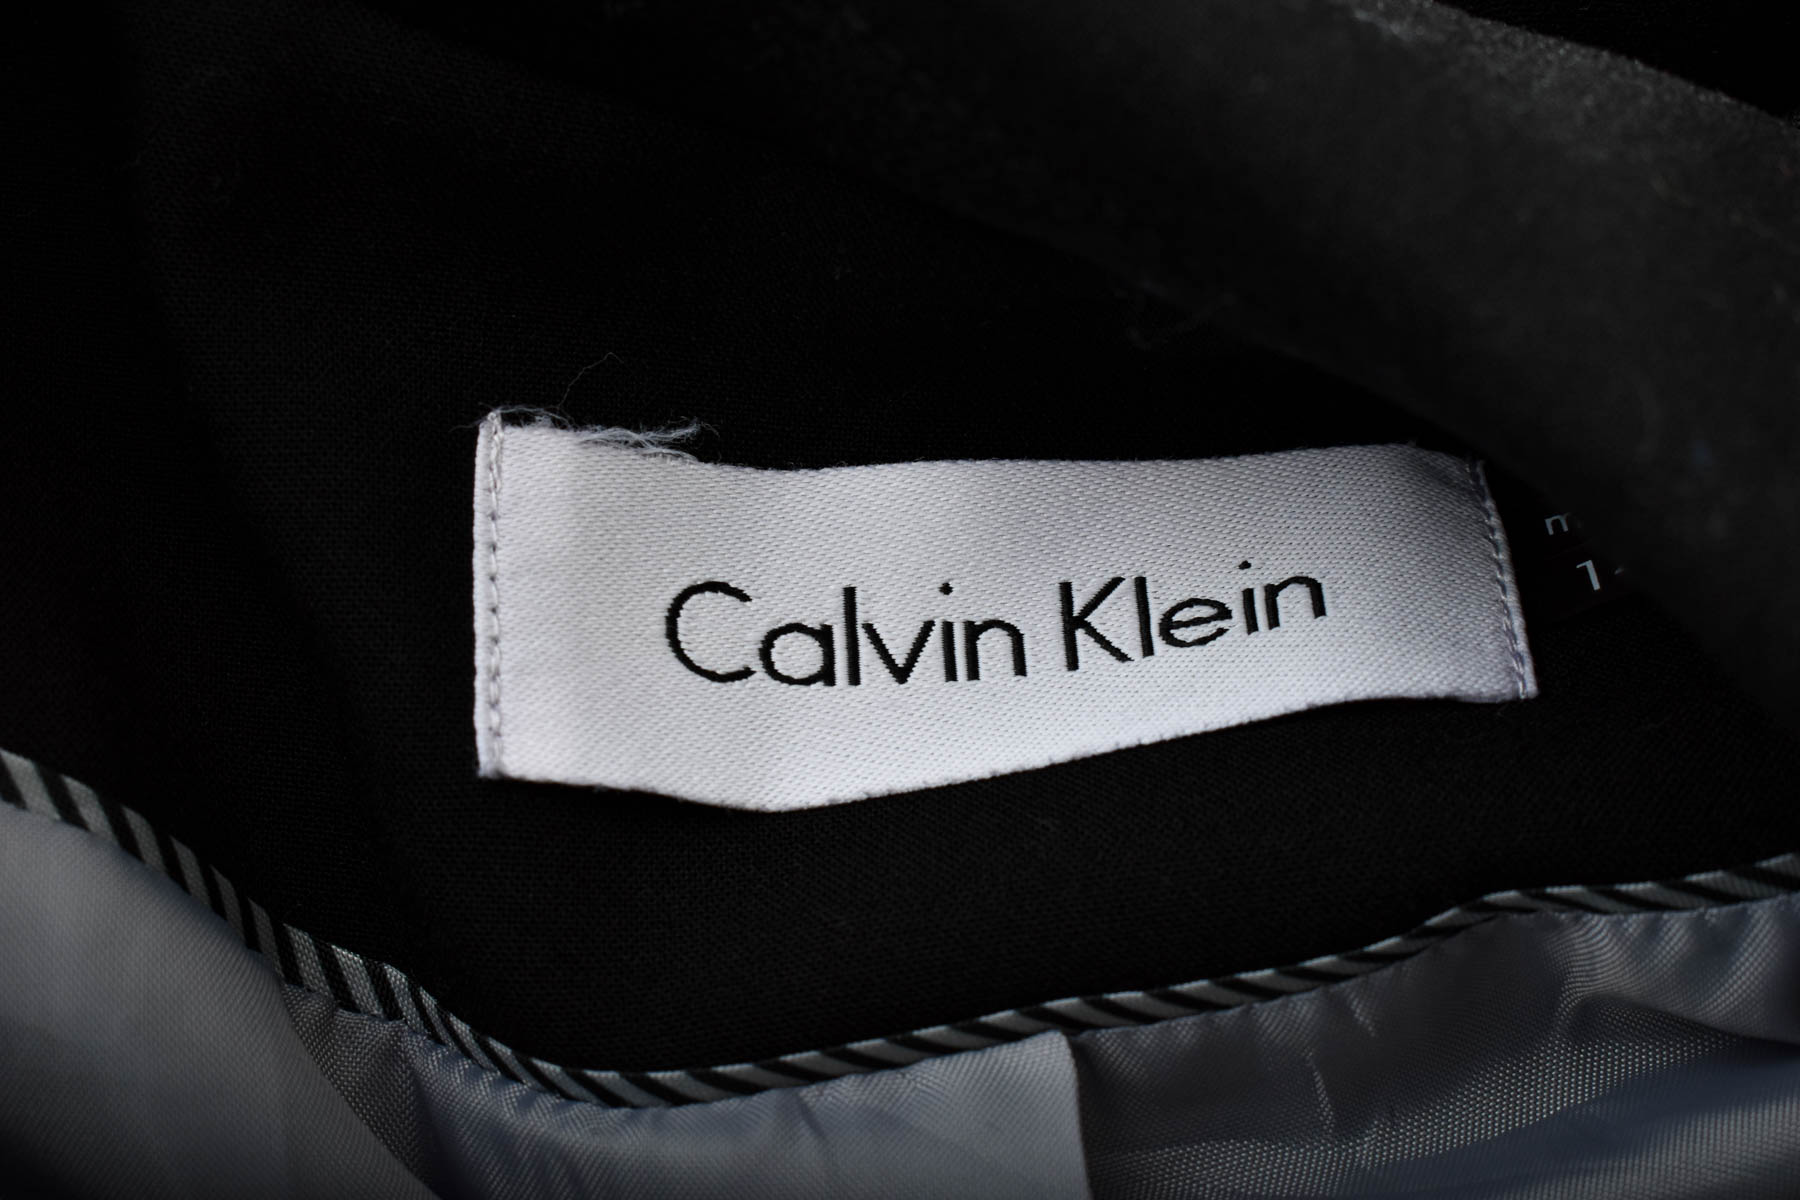 Women's blazer - Calvin Klein - 2